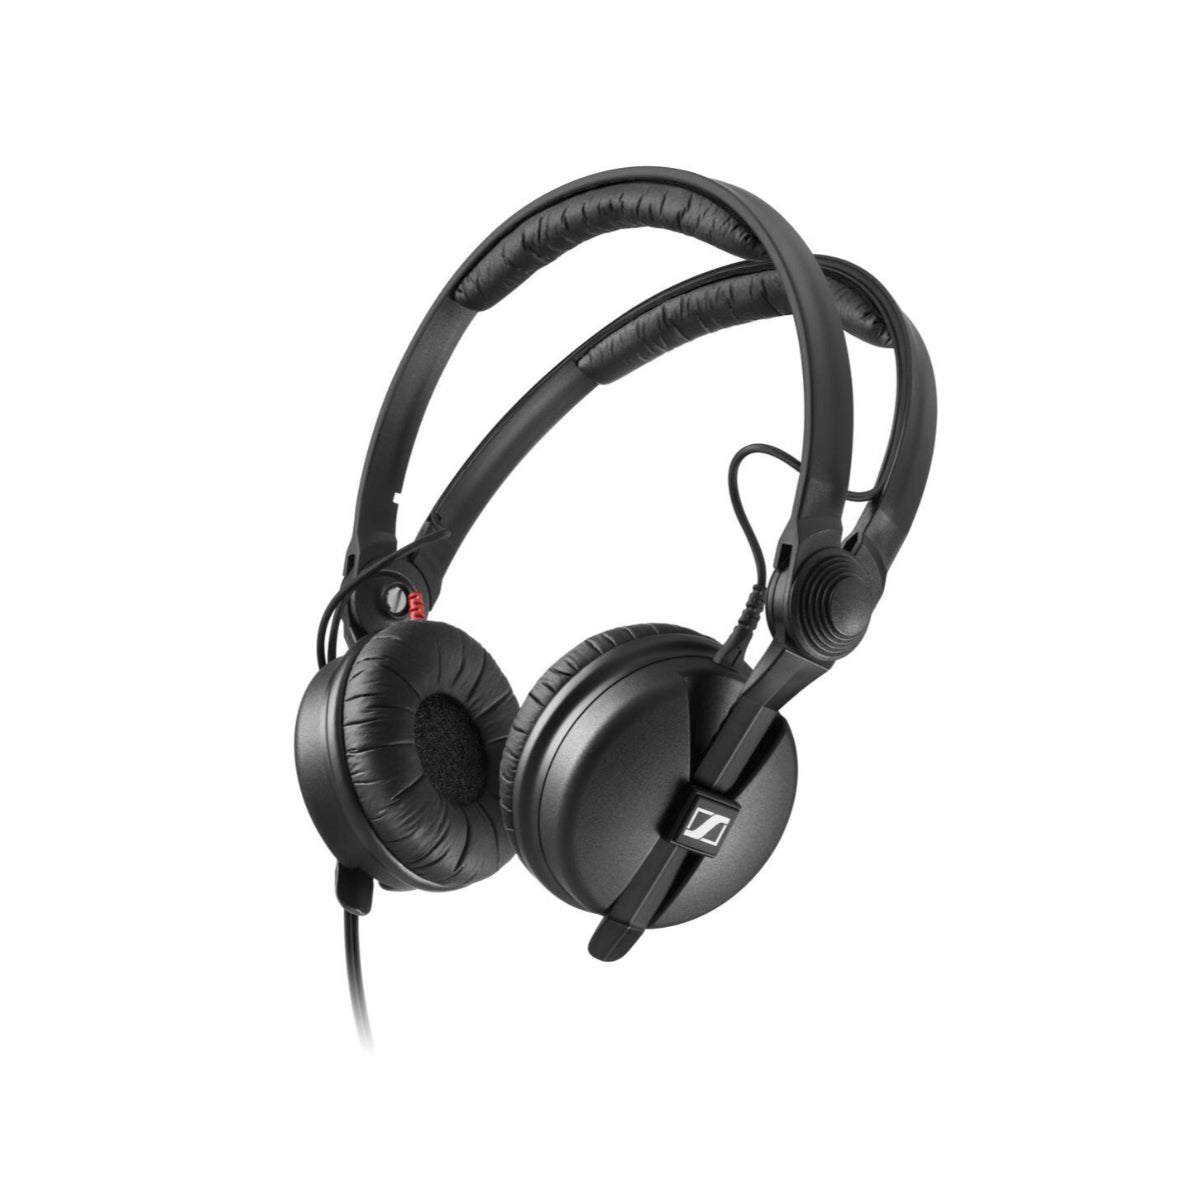 Sennheiser HD 25 PLUS Headphones, Dyn. Headphone, 3m Cable, 3.5mm Angled Jack Plug